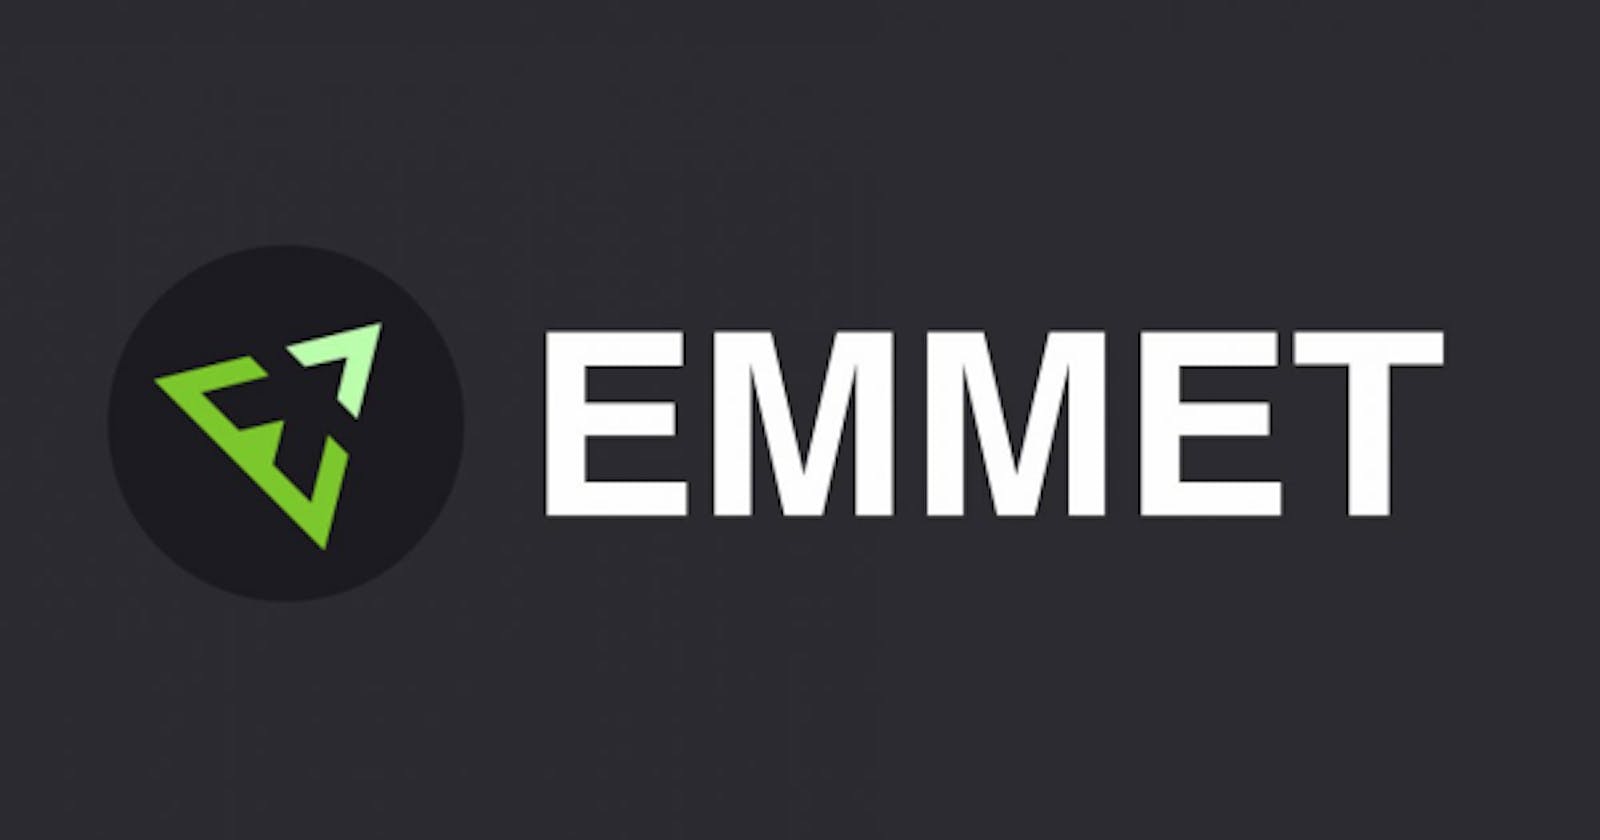 Using Emmet for Faster HTML  Coding